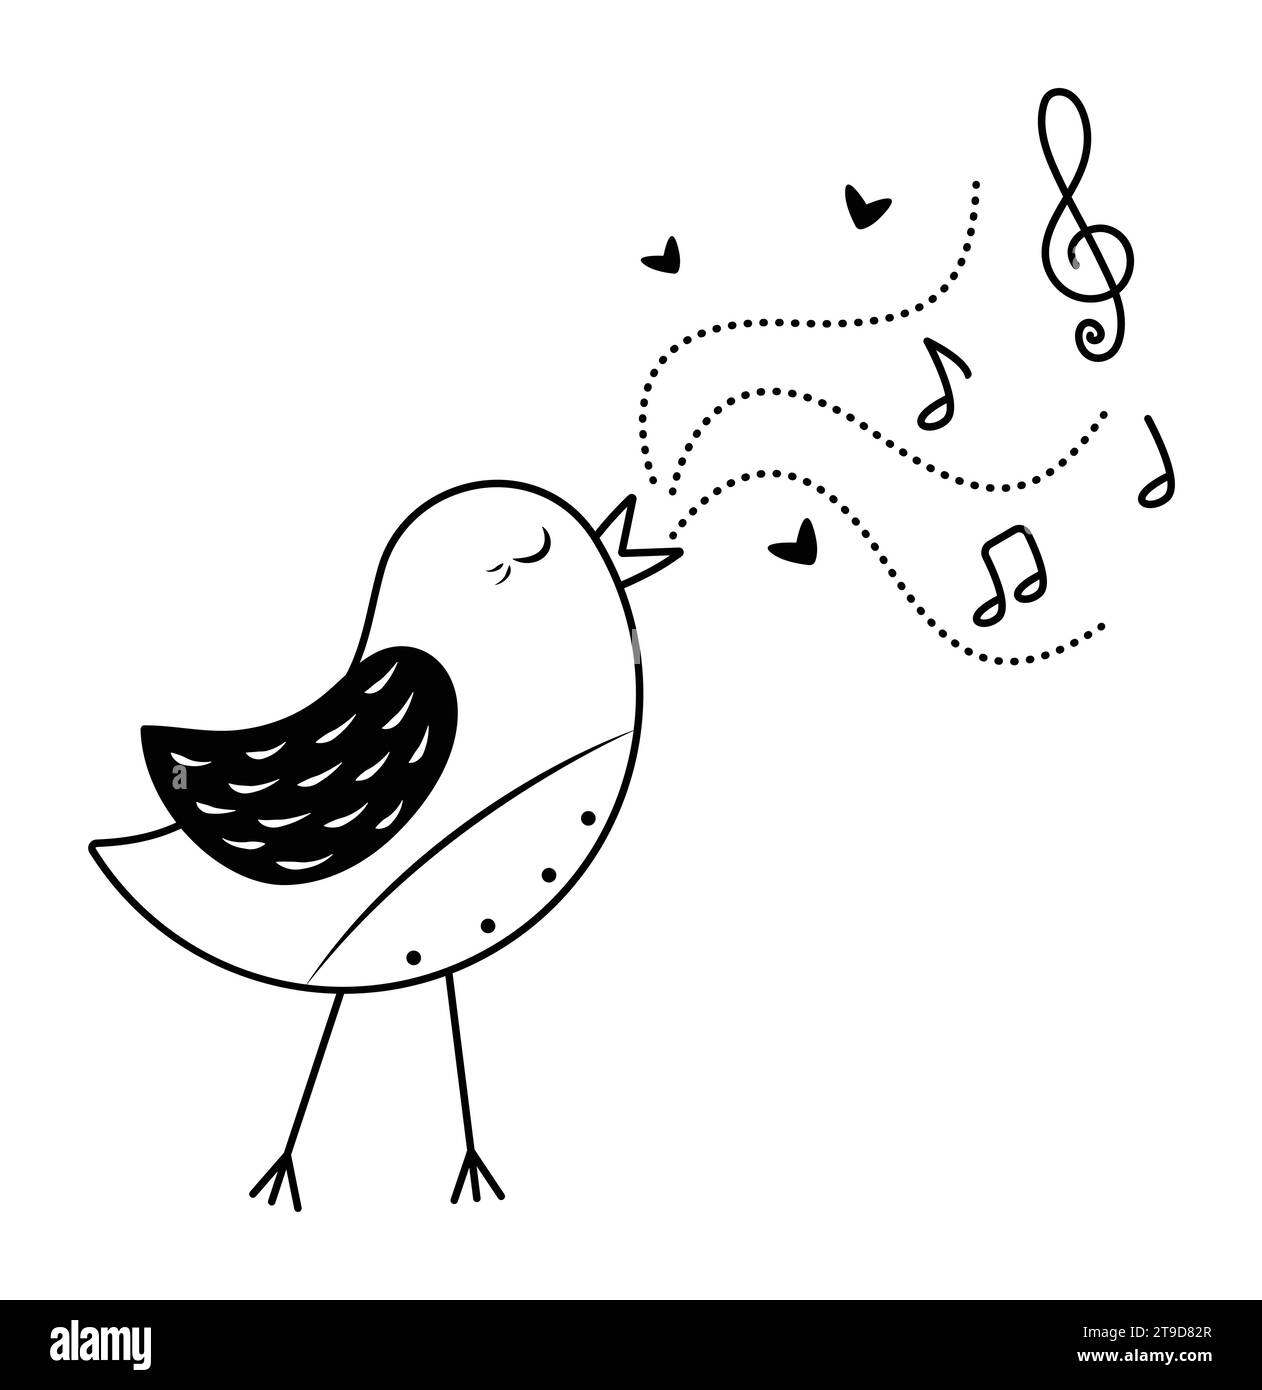 Chant noir et blanc nightingale avec des notes, illustration monochrome vectorielle pour les amateurs de musique Illustration de Vecteur